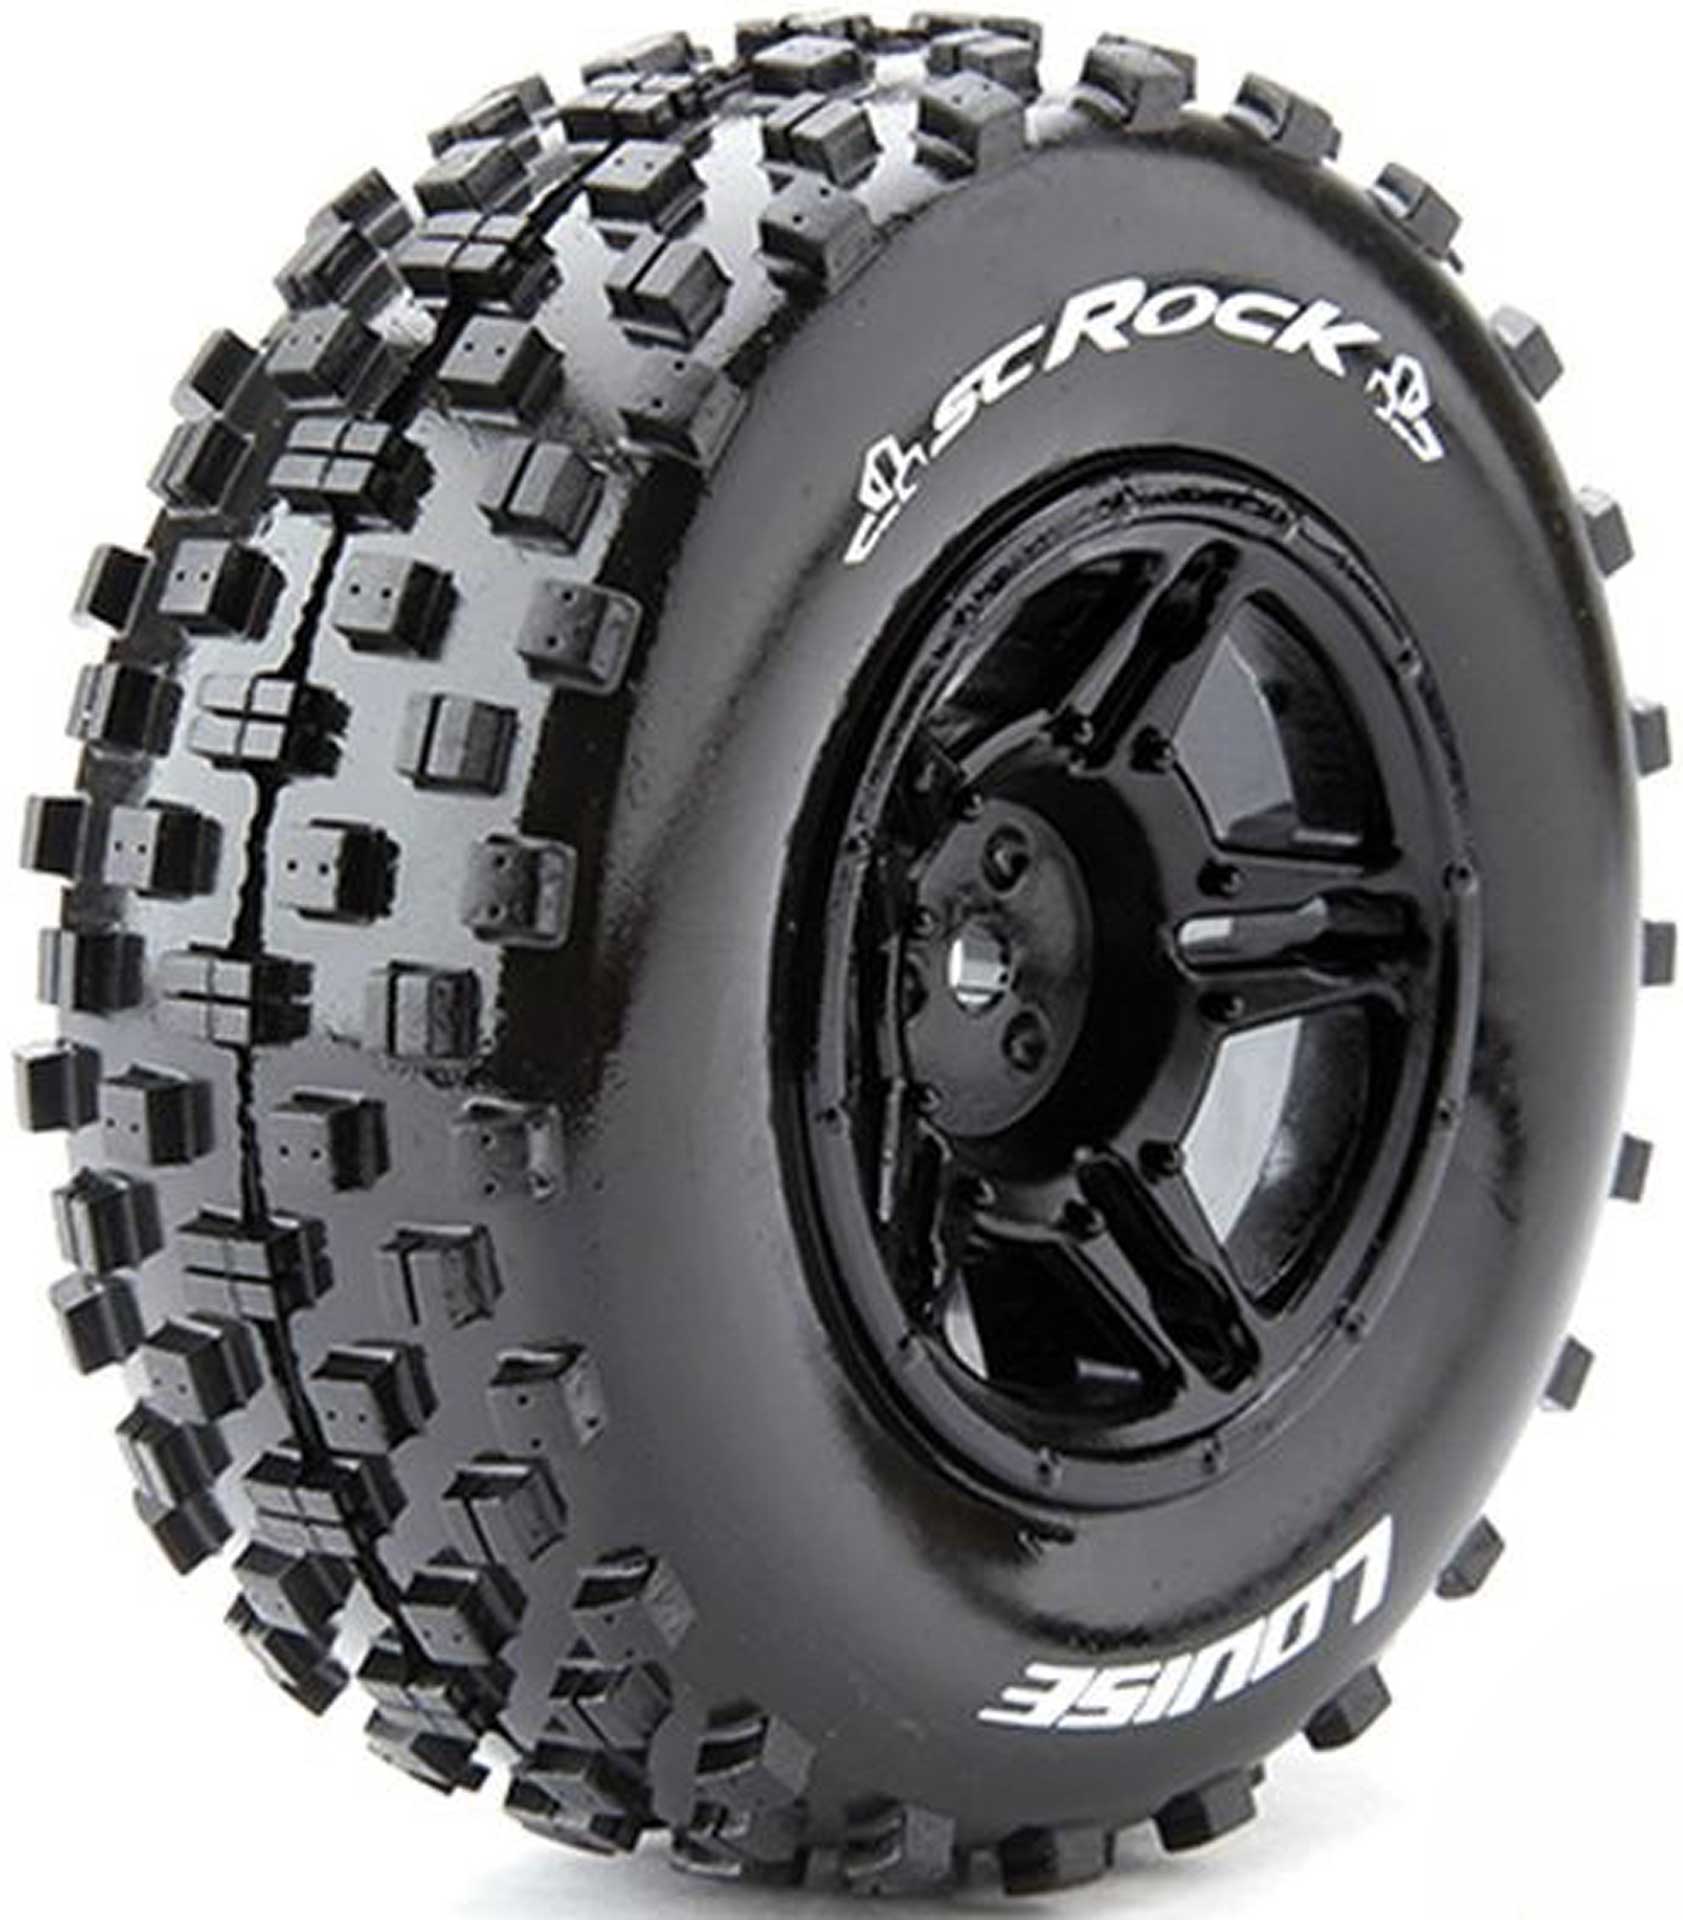 LOUISE SC-Rock pneu soft sur 2.2/3.0 Jante noire 12mm(2)